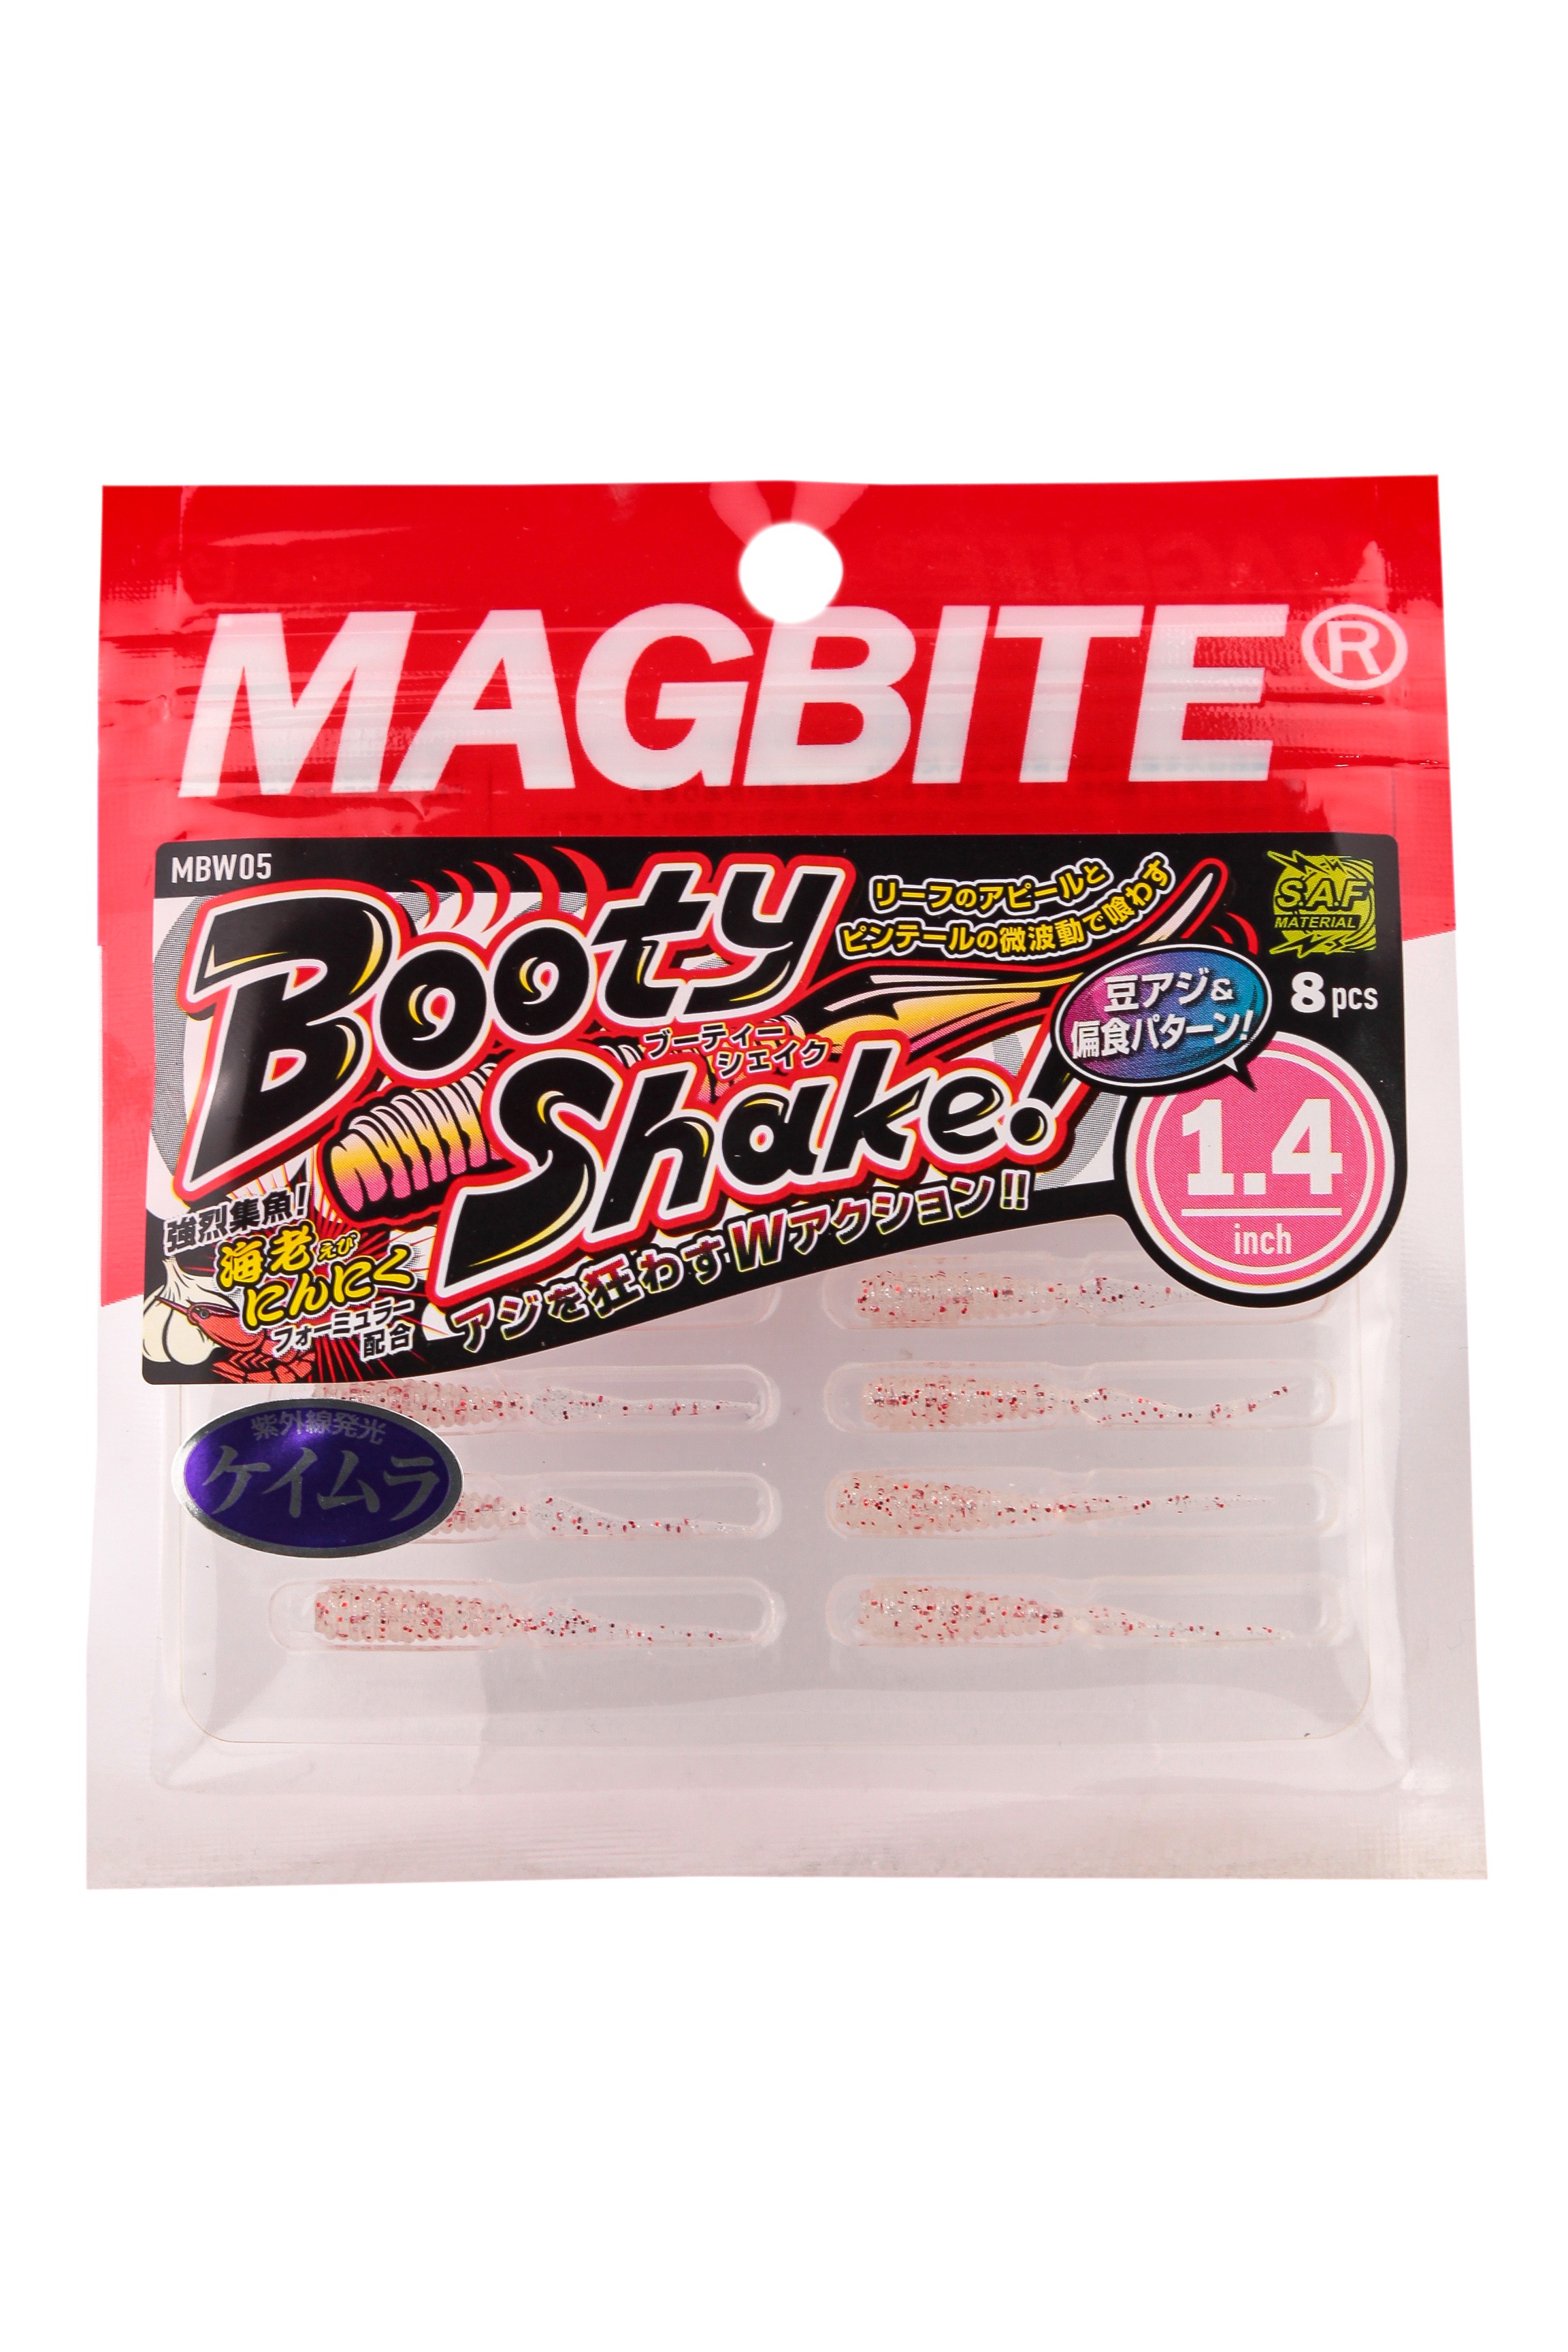 Приманка Magbite MBW05 Booty Shake 1,4" цв.03 - фото 1